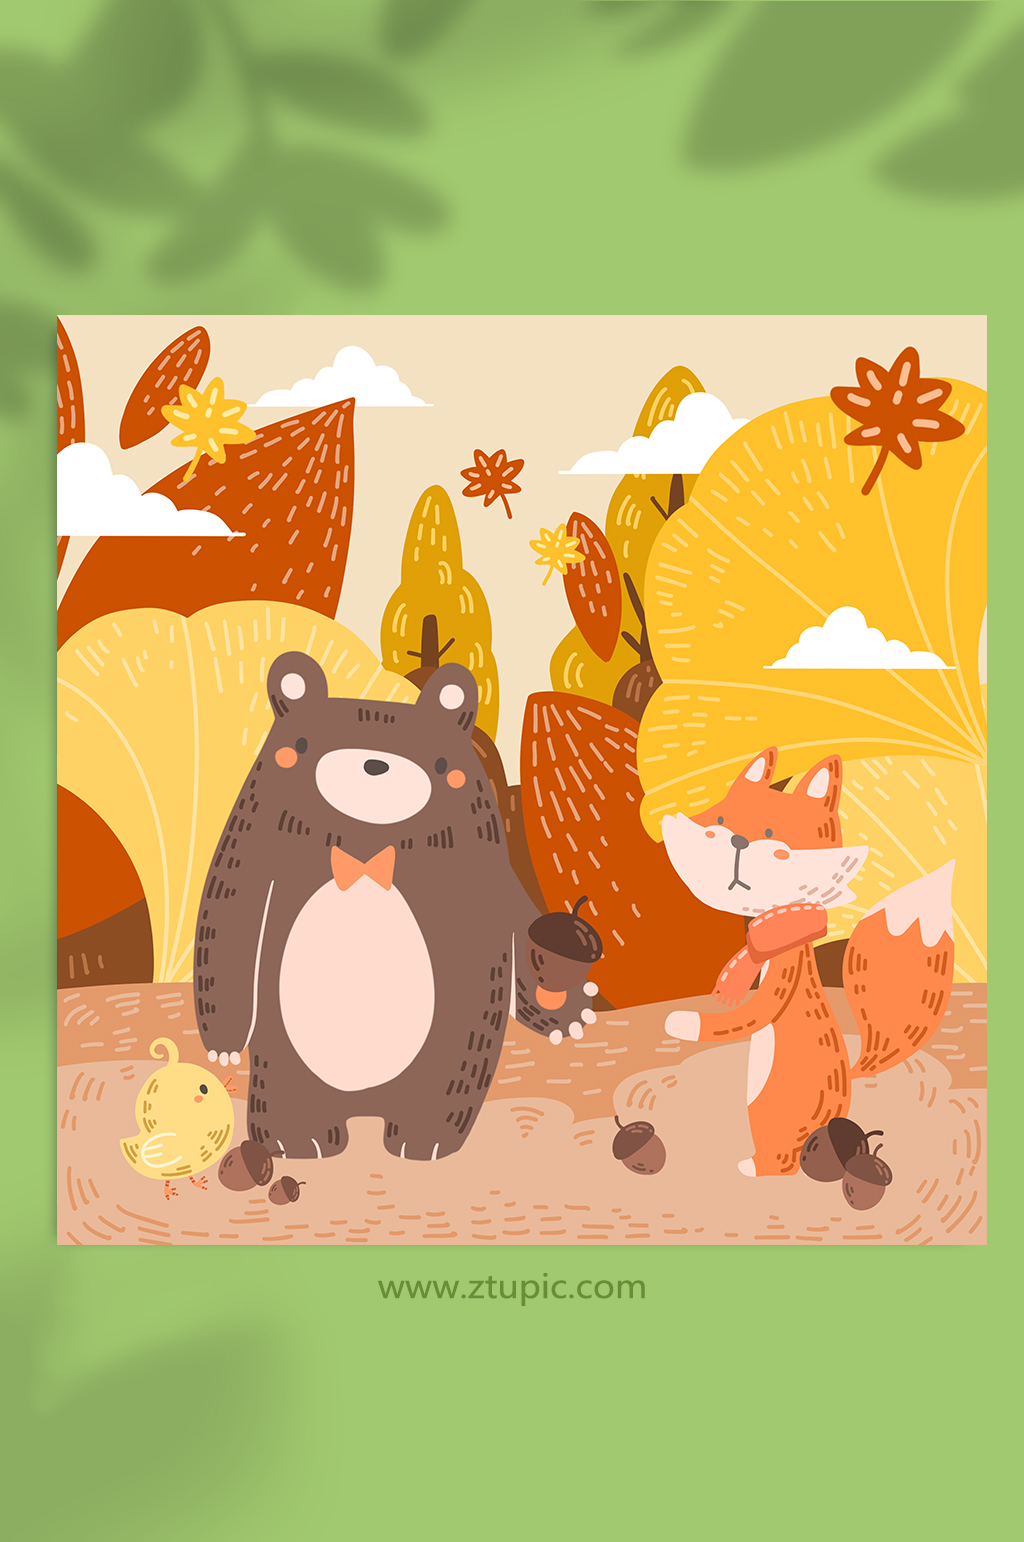 棕熊狐狸小鸡银杏叶丰收秋天秋季动物插画